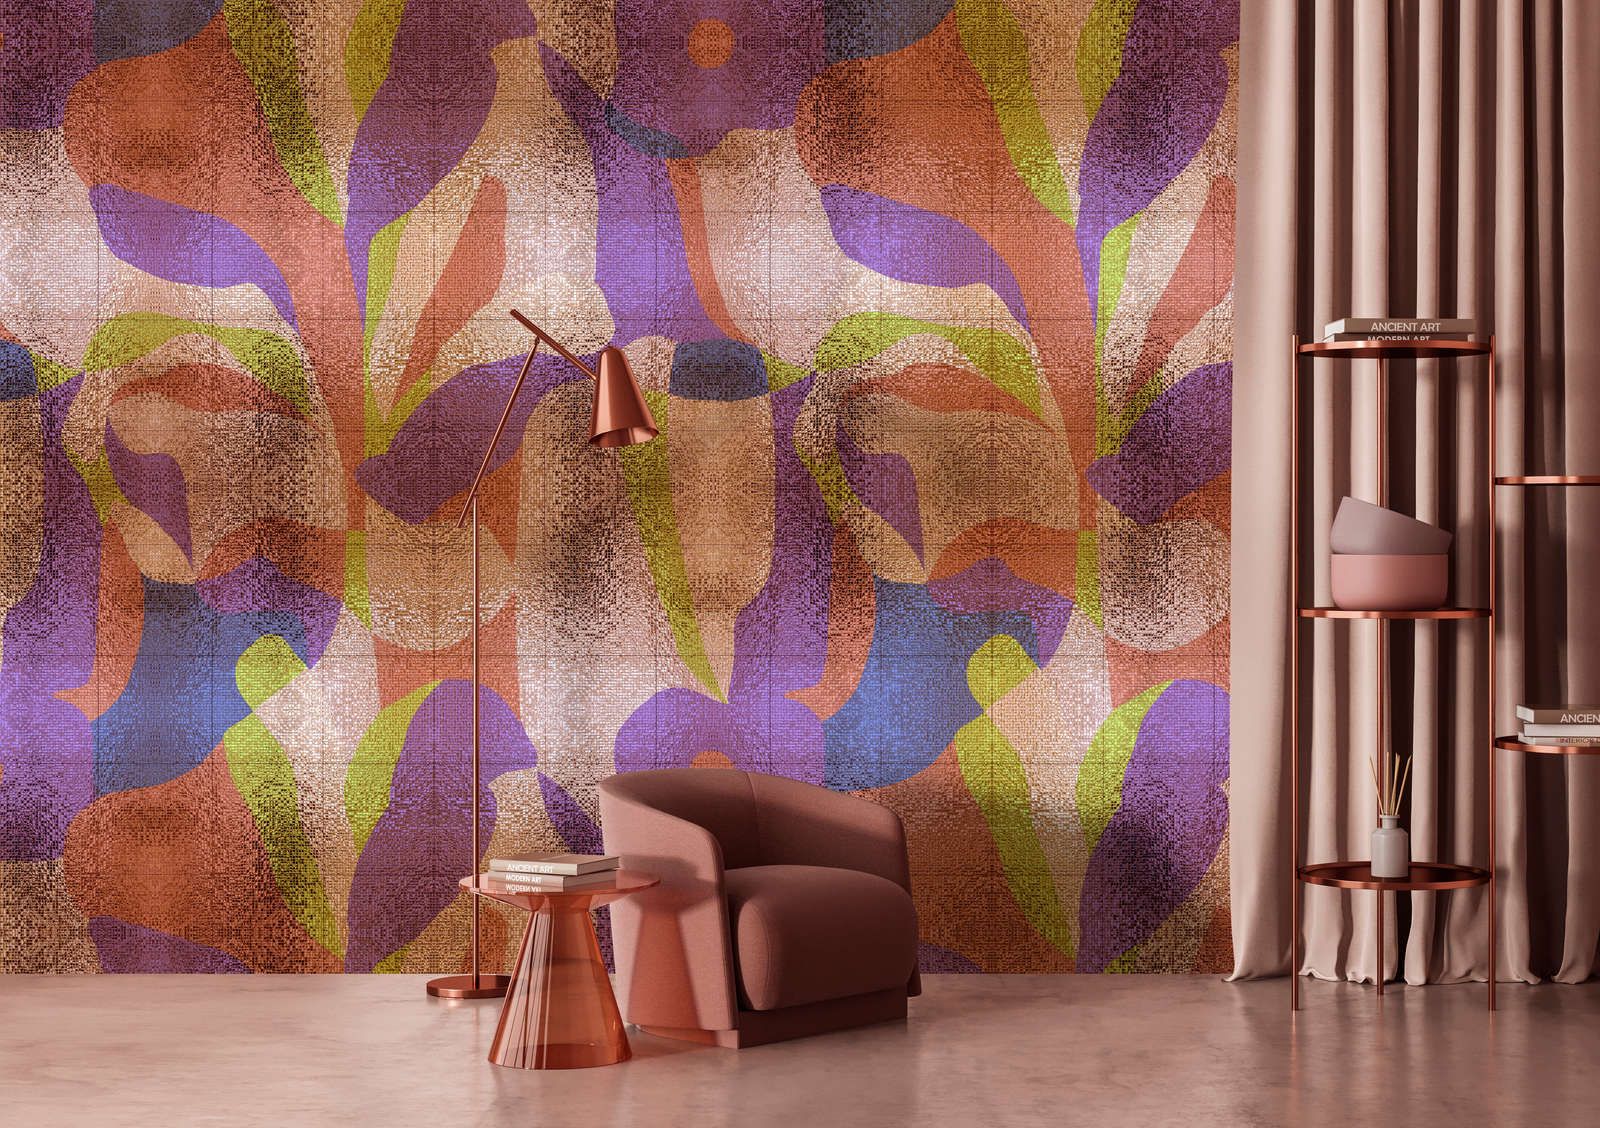             Fotomural »brillanaza« - Diseño gráfico de hojas de colores con estructura de mosaico - Tela no tejida mate y lisa
        